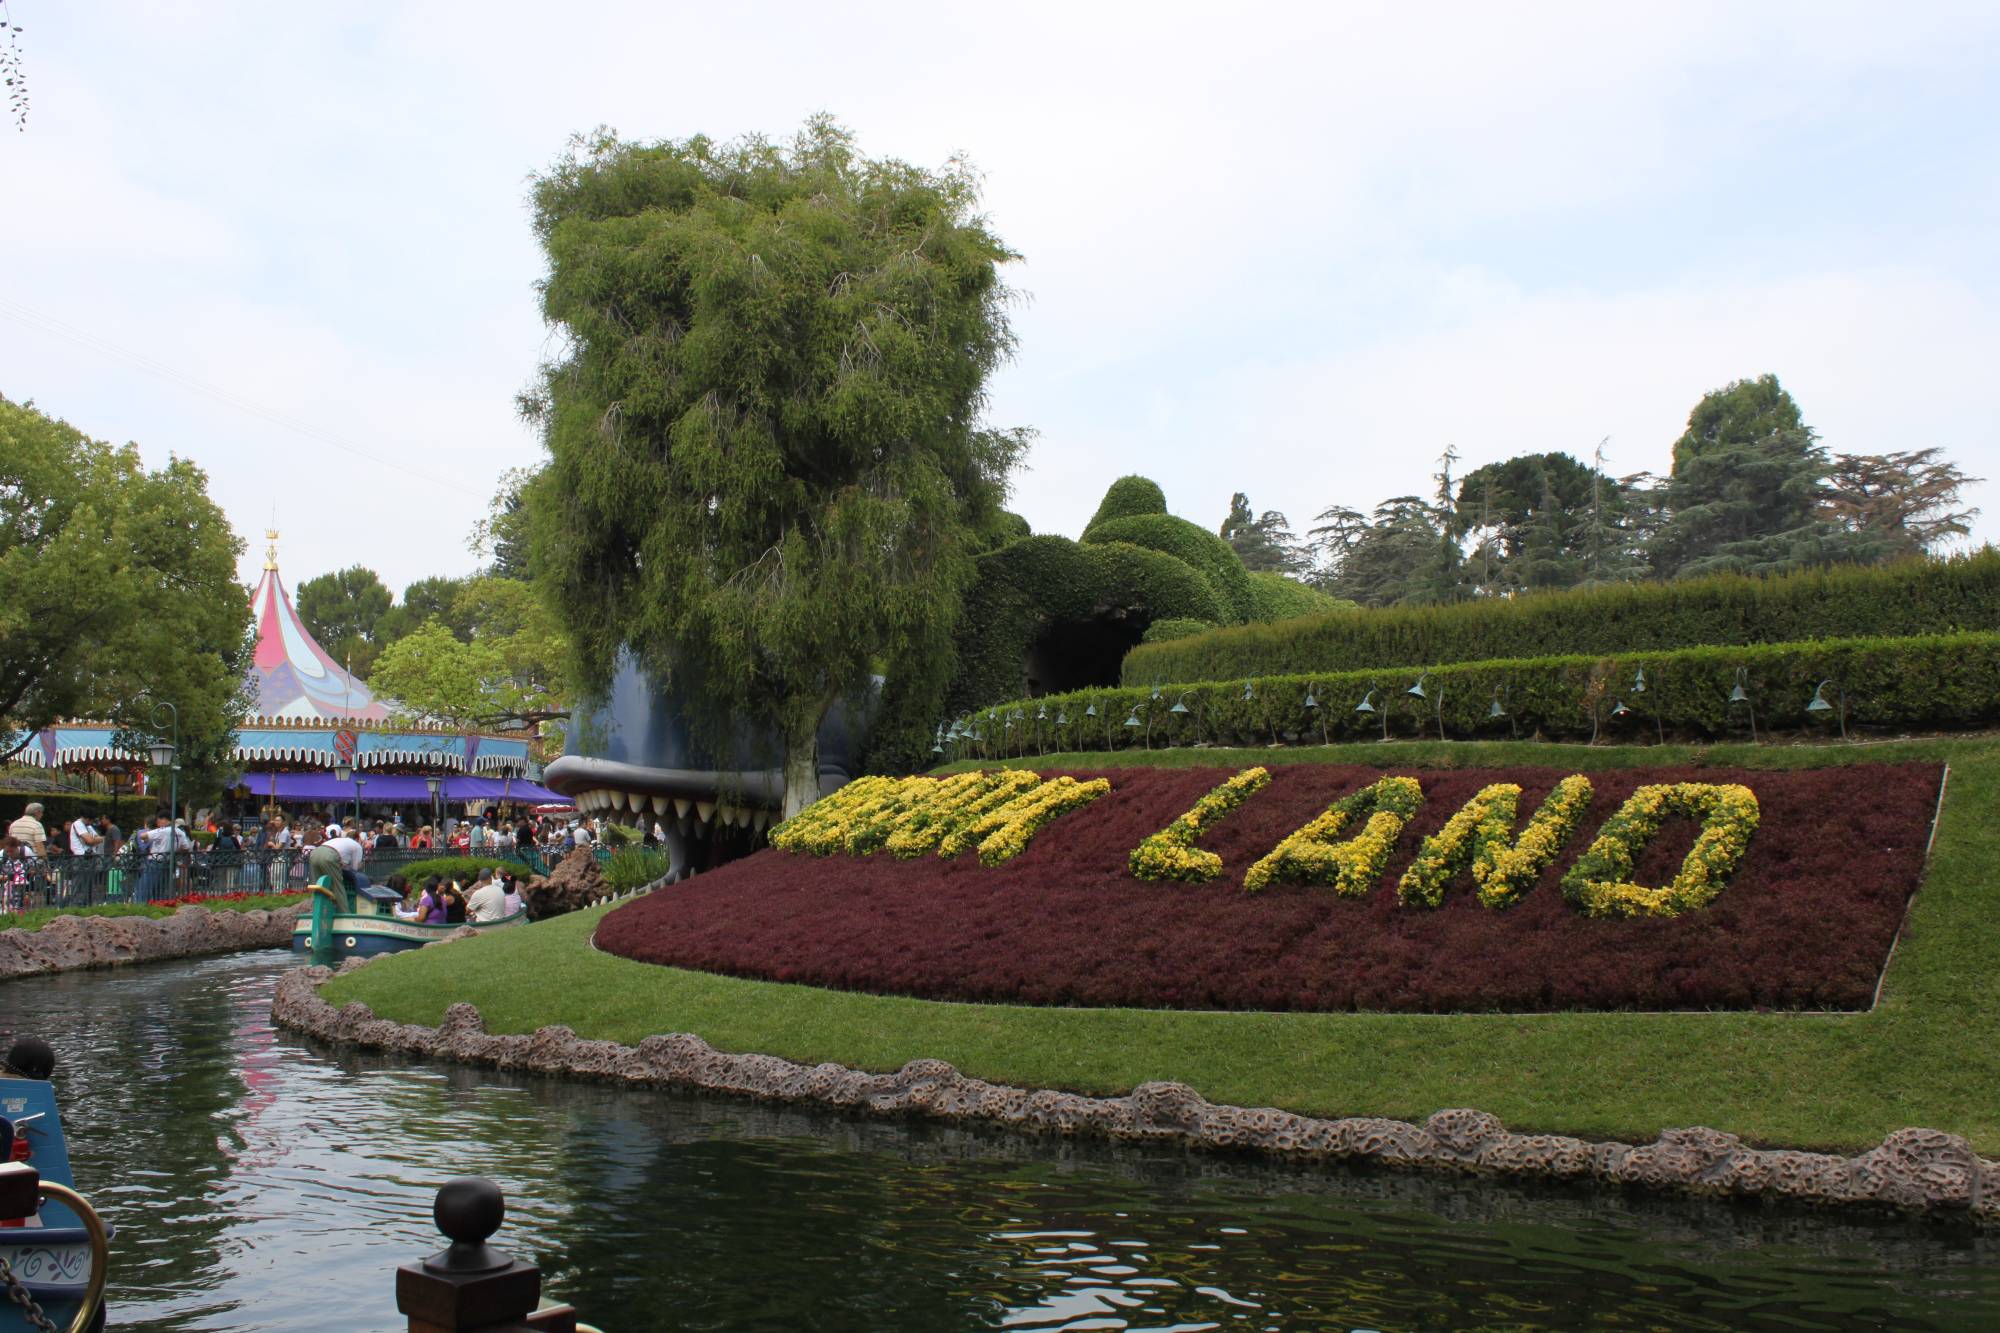 Disneyland - Fantasyland - Storybook Land Canal Boats